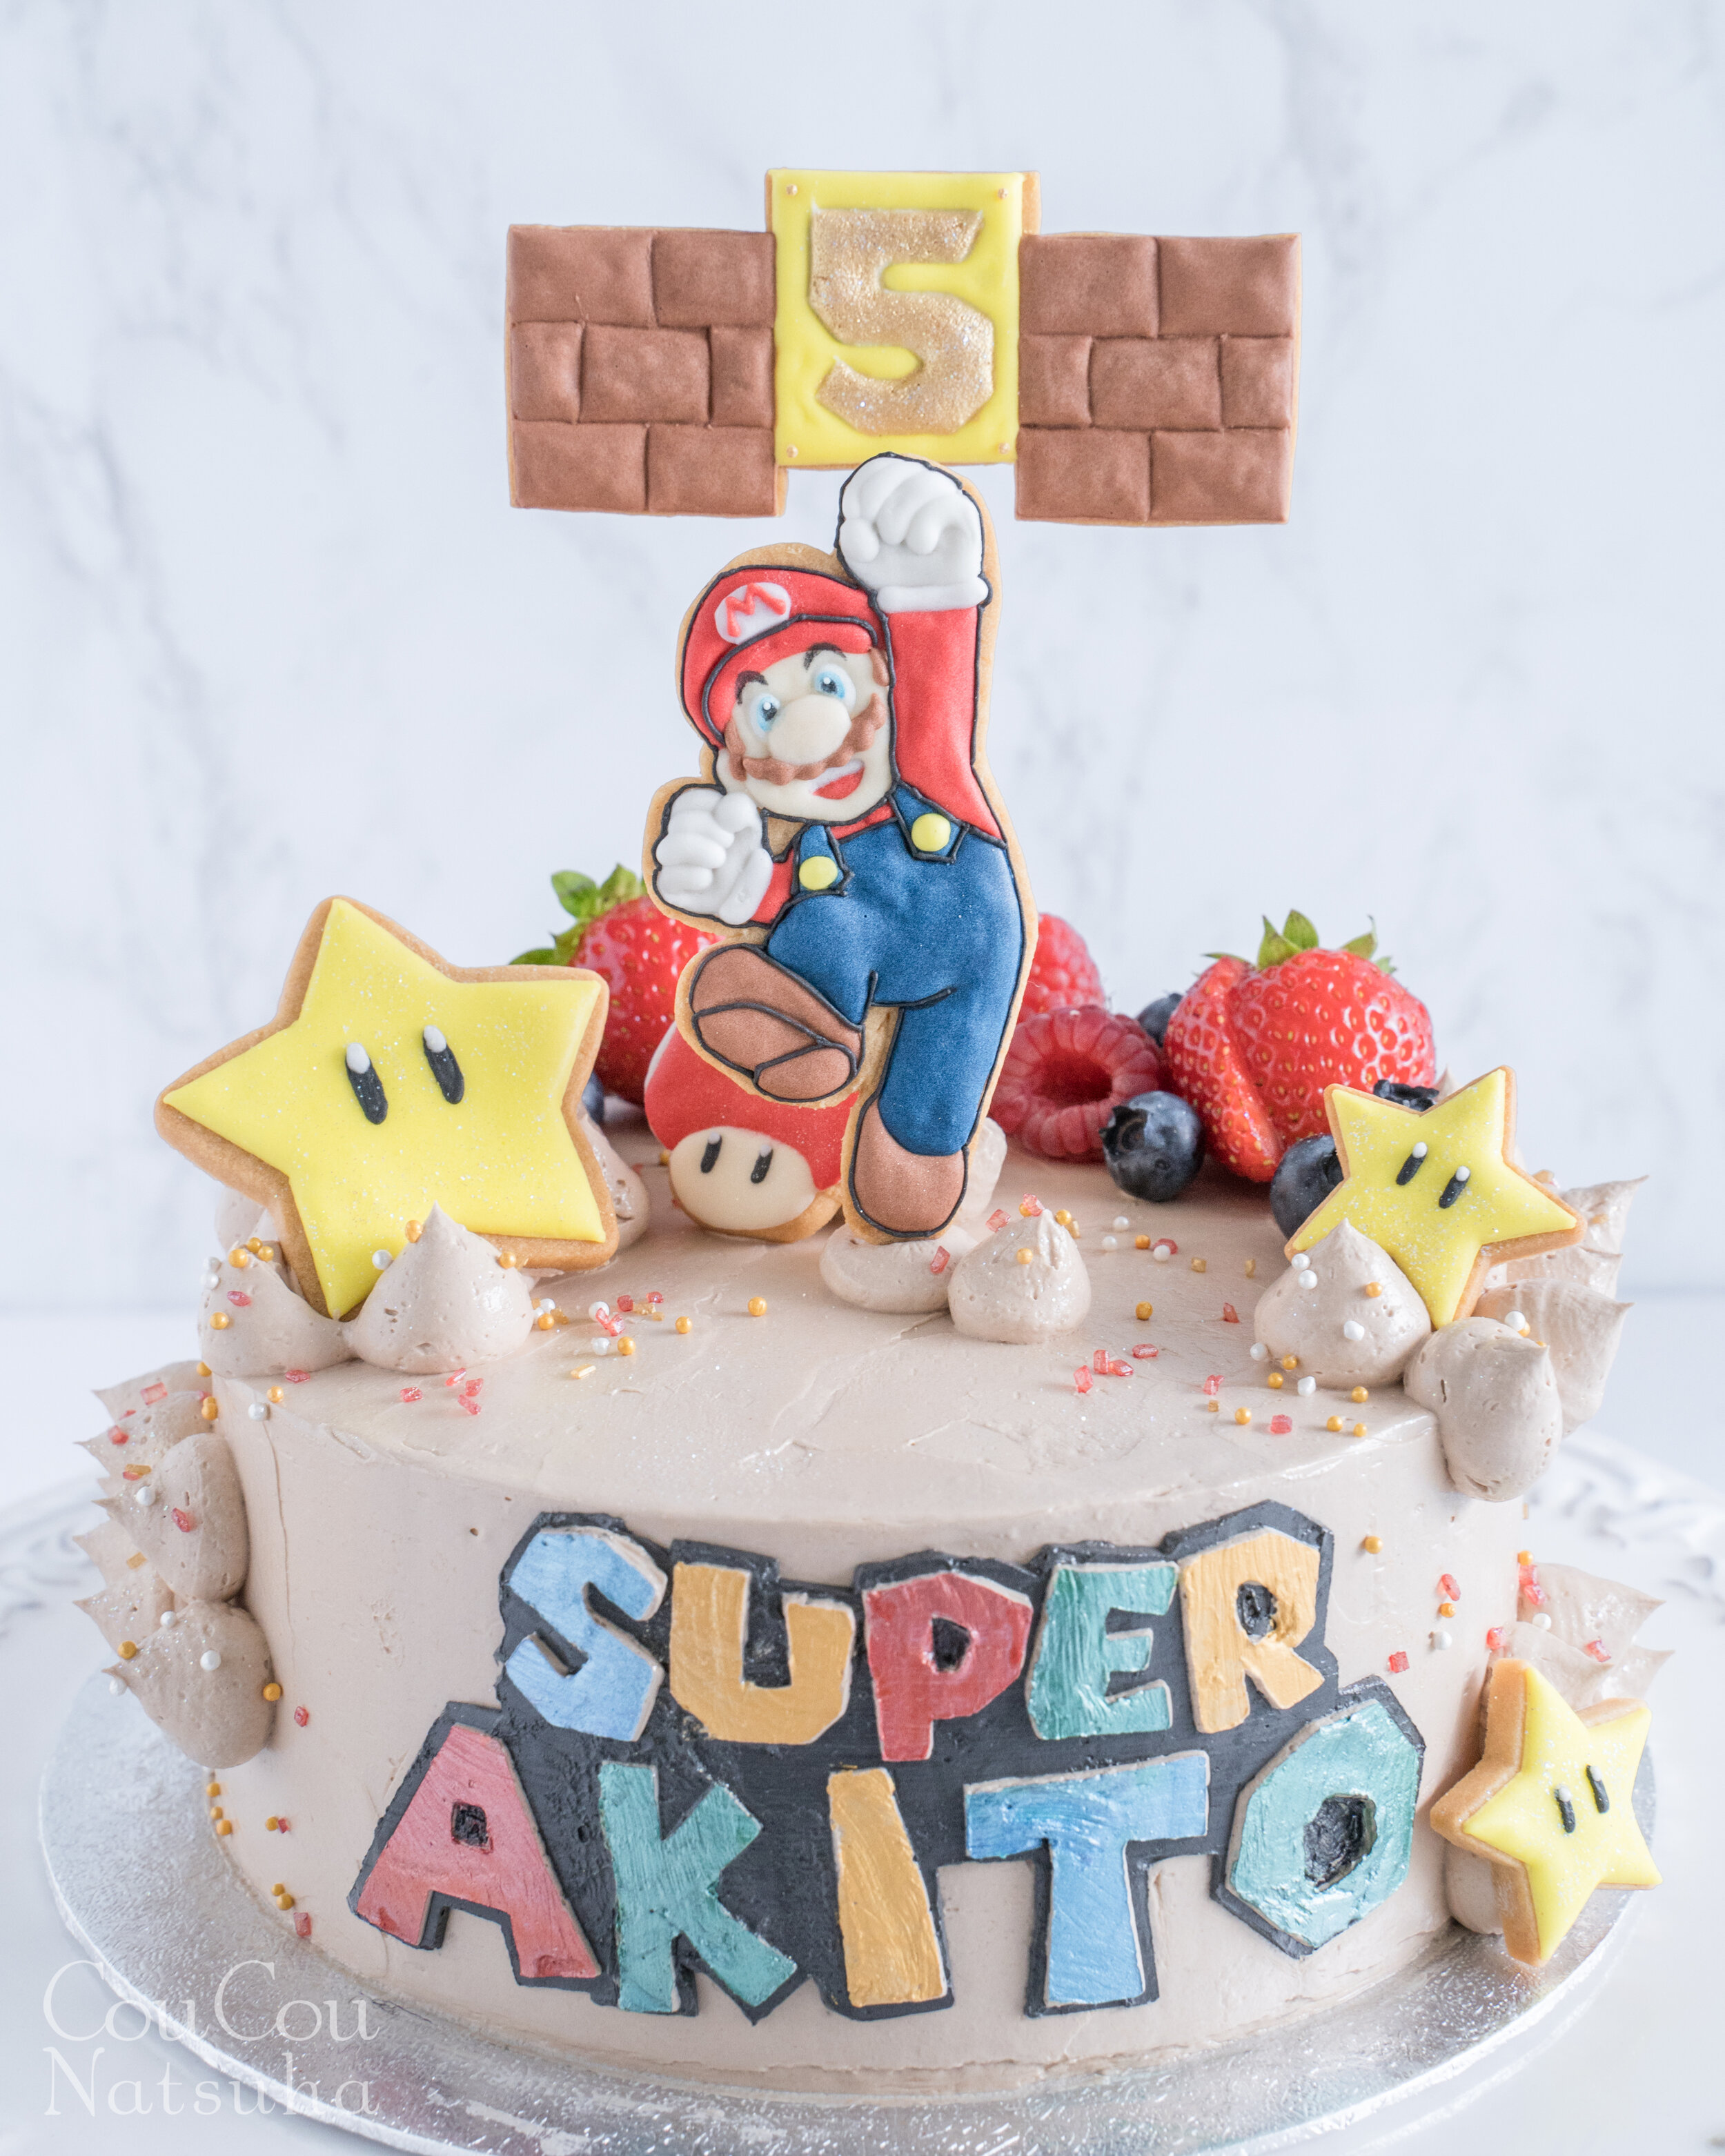 Super Mario In Chocolate Island Birthday Cake スーパーマリオのチョコレー島 なバースデーケーキ Coucou Natsuha